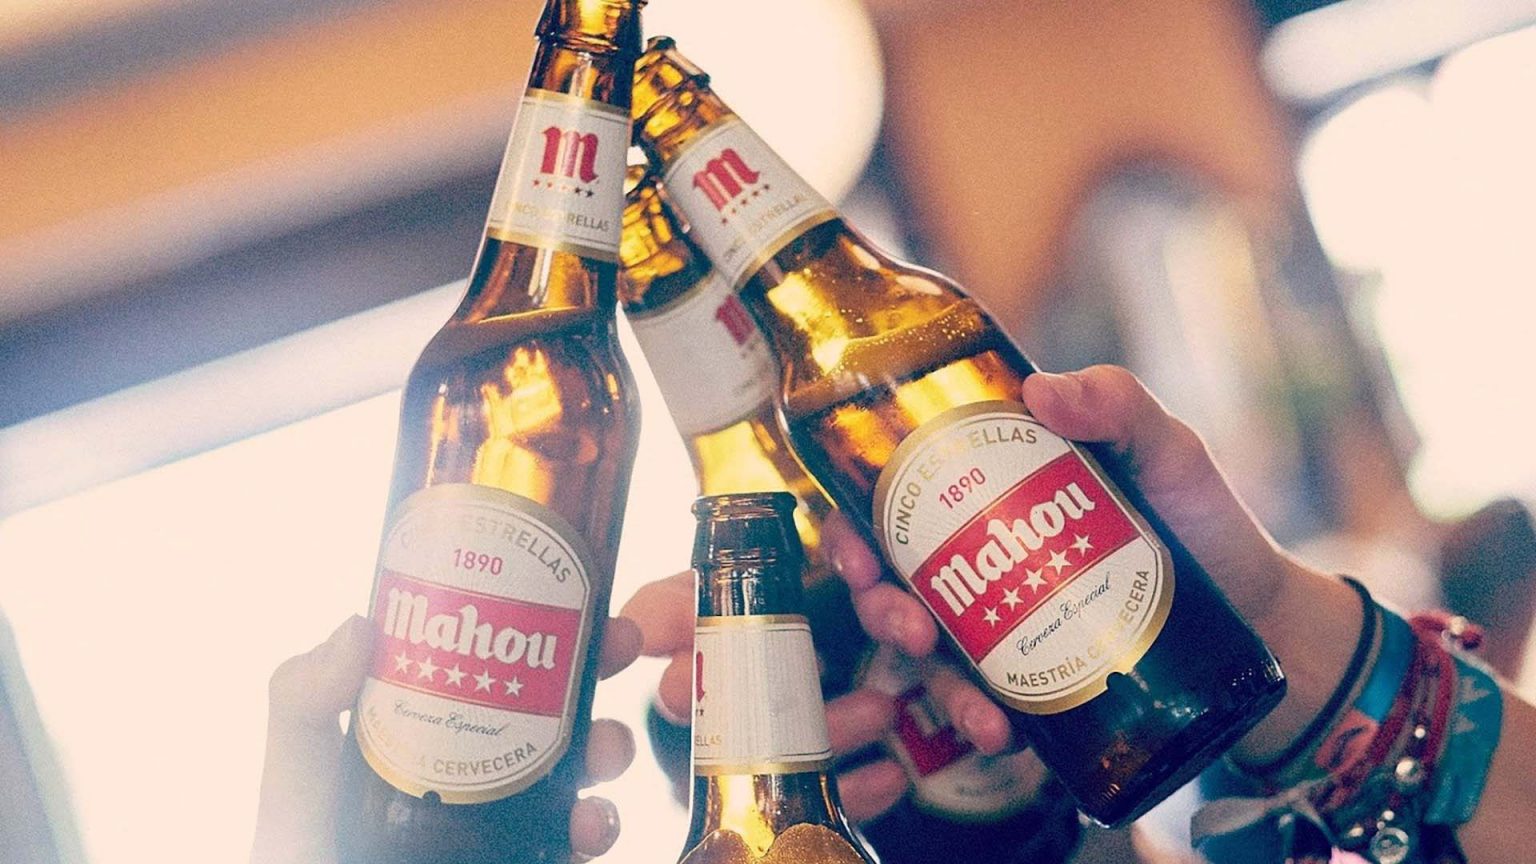 Mahou, San Miguel y Damm, las cerveceras españolas más premiadas a nivel internacional